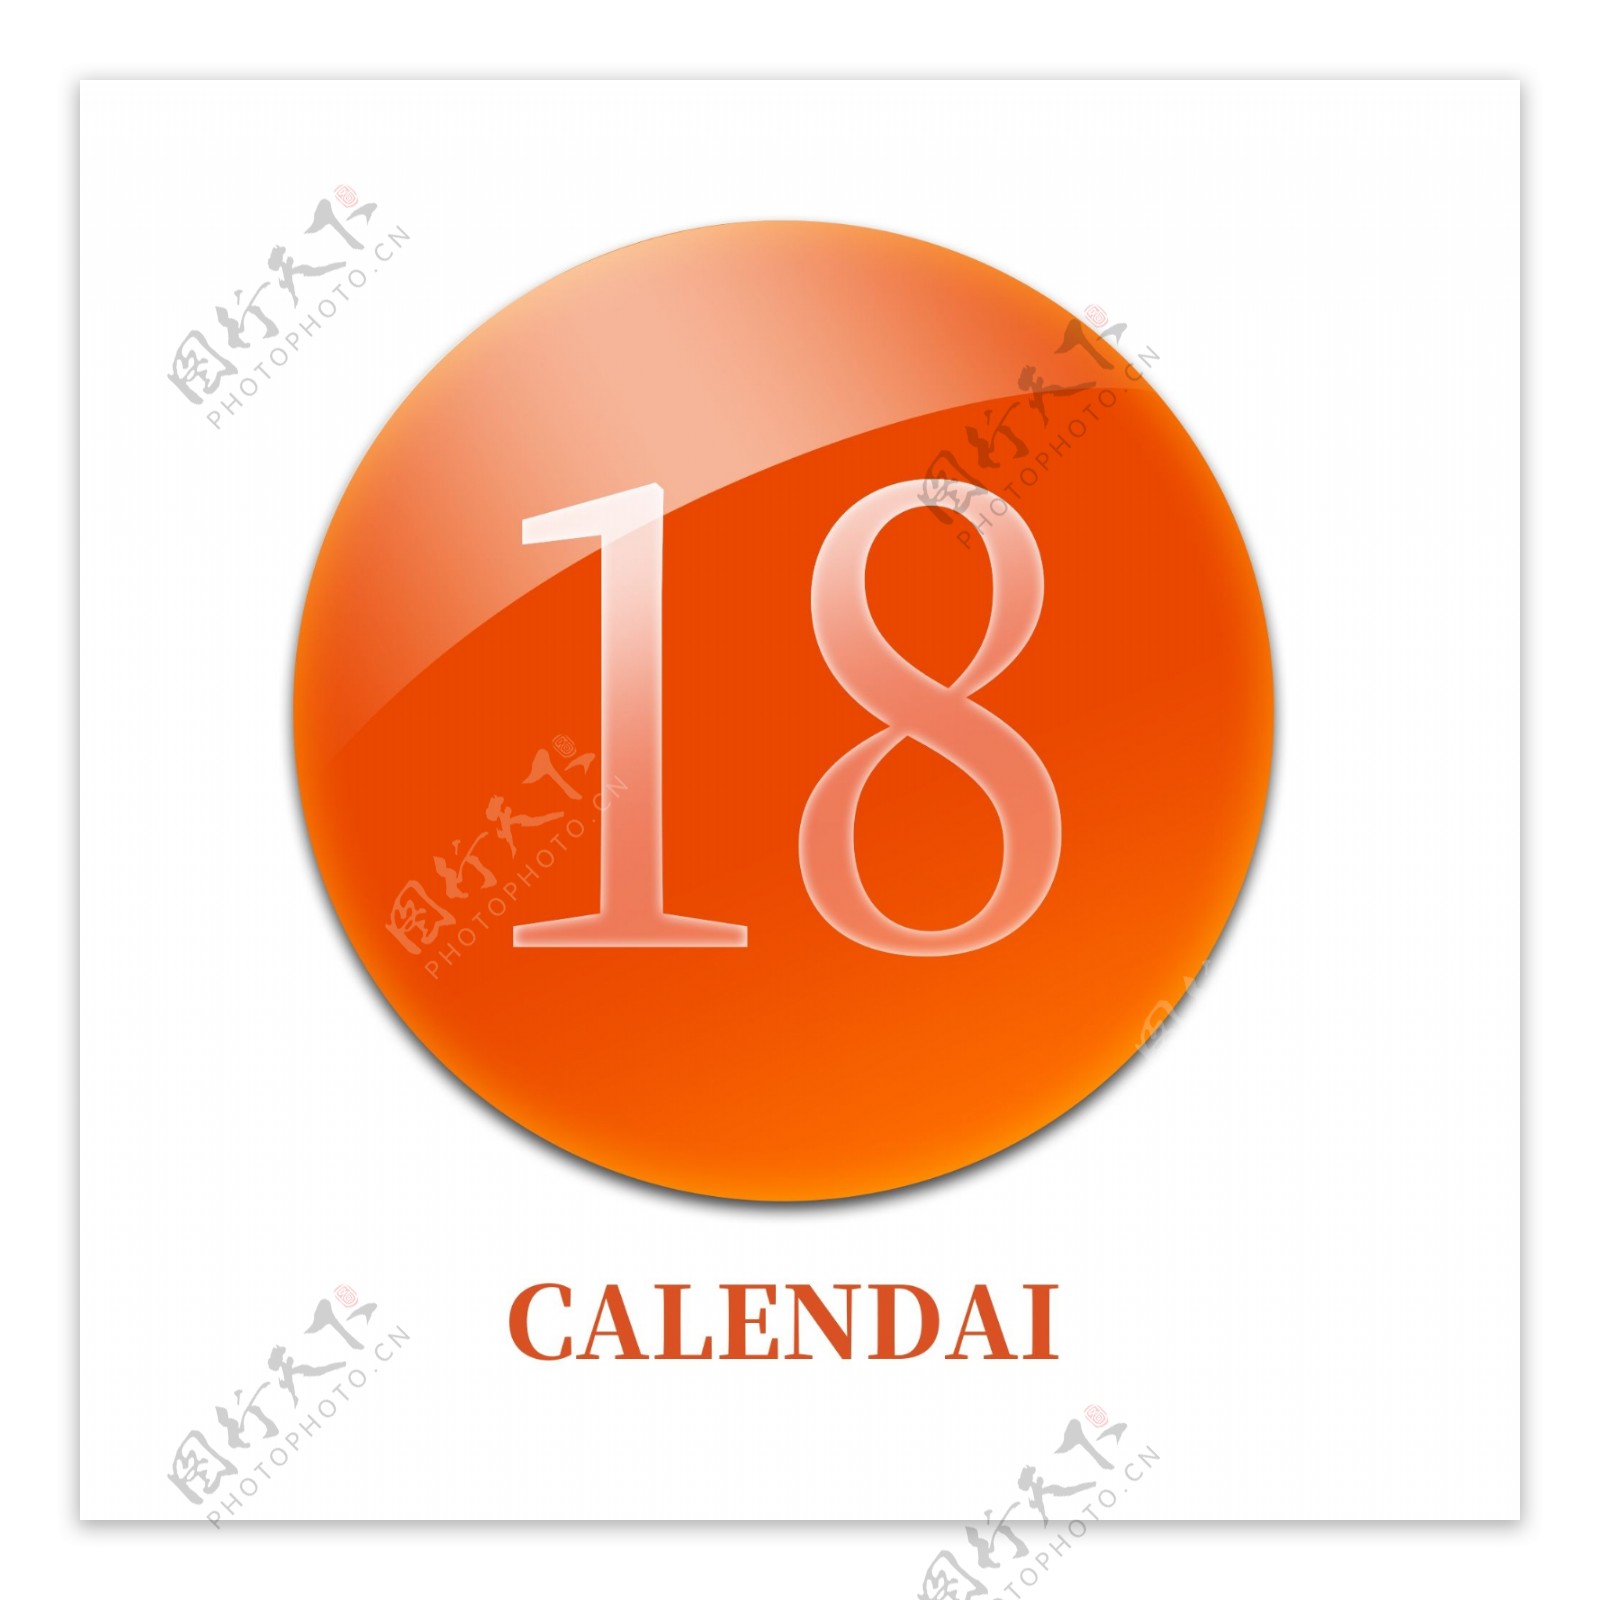 手机水晶玻璃主题图标设计日历icon